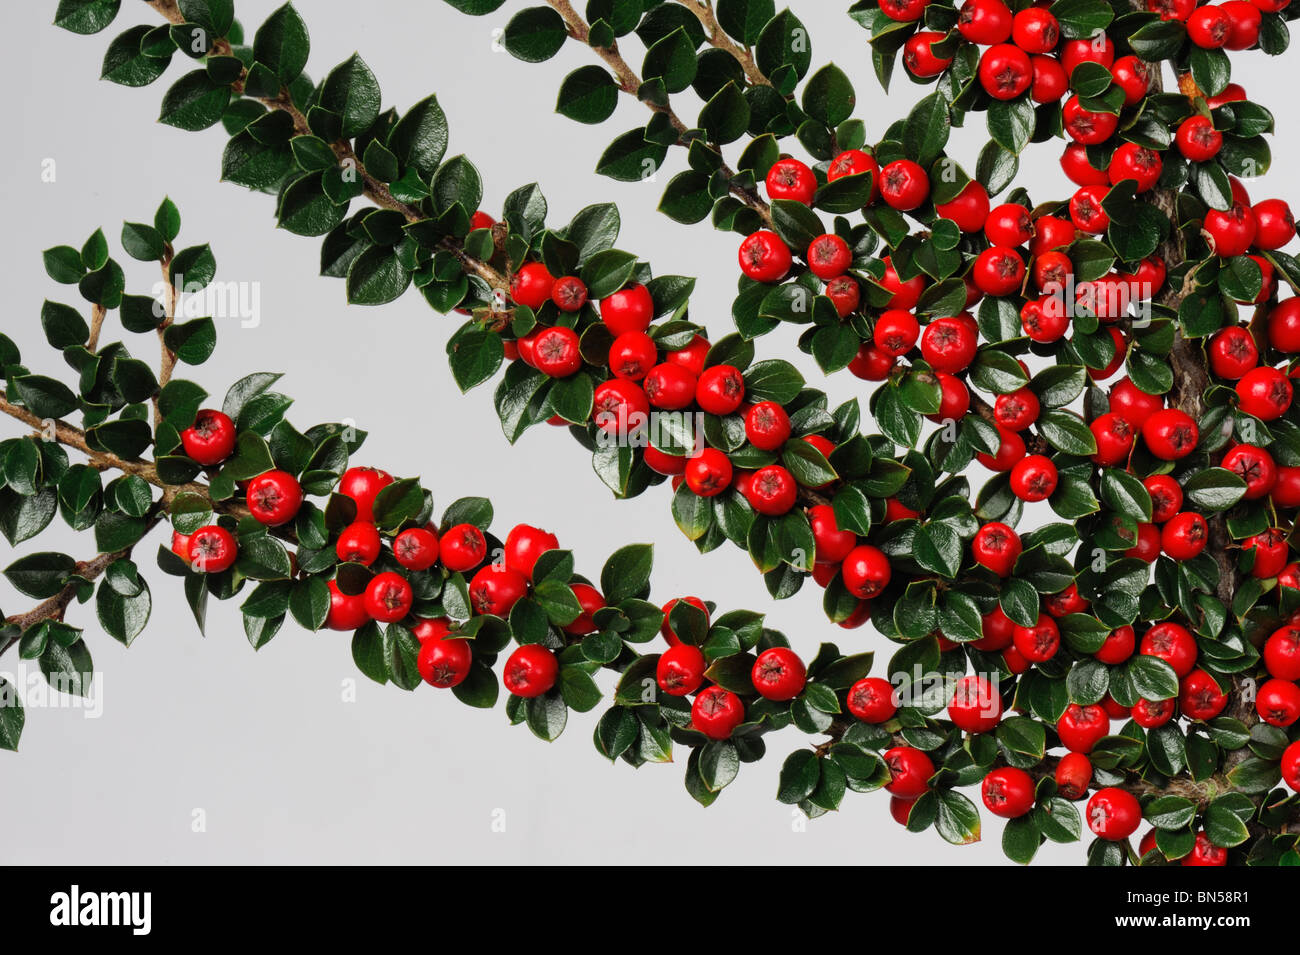 Leuchtend roten Beeren mit dunkelgrünen Blättern auf Zwergmispel Horizontalis vor einem weißen Hintergrund Stockfoto